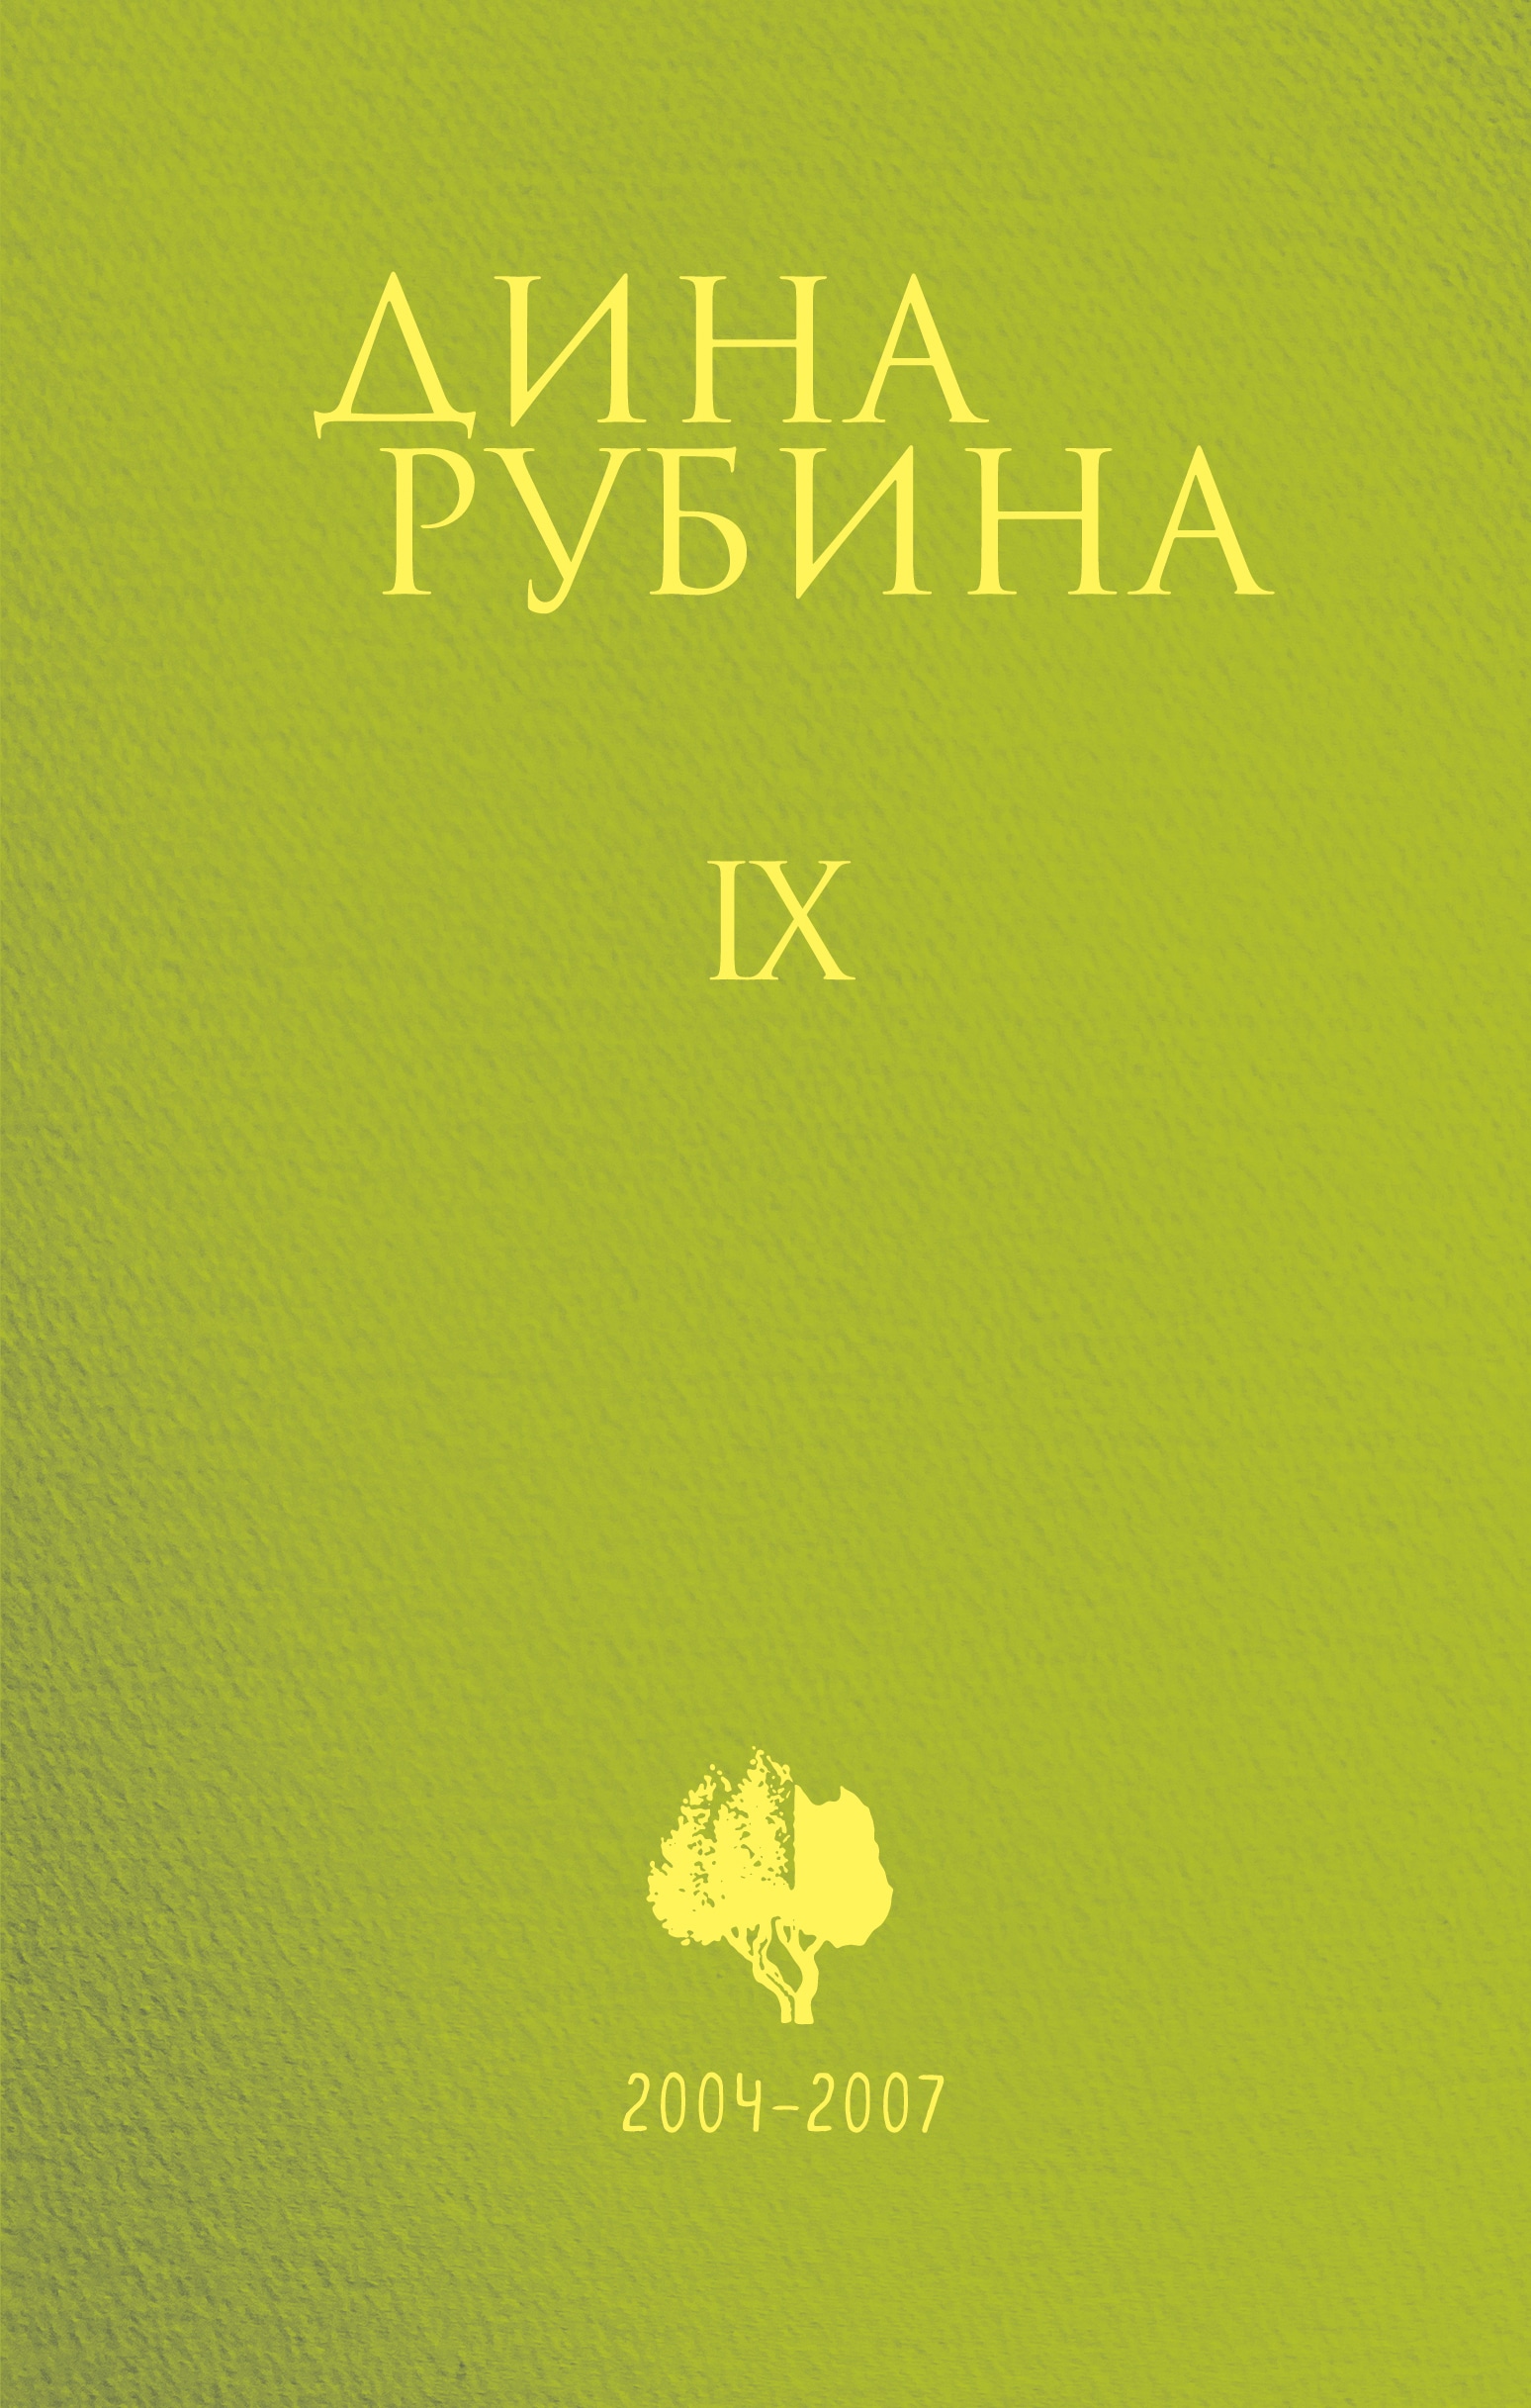 Book “Том 9” by Дина Рубина — 2021